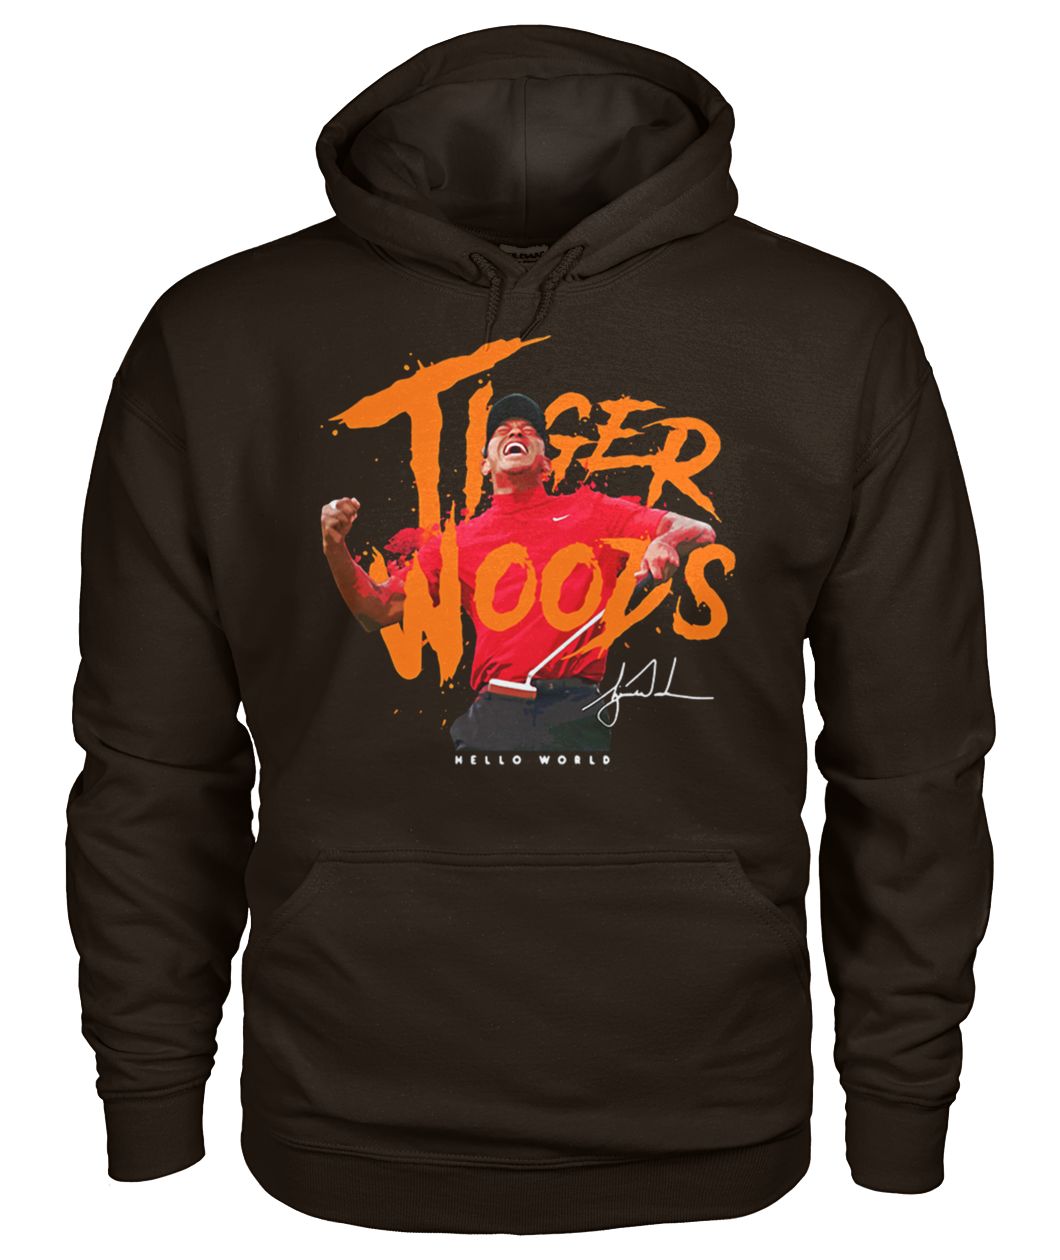 Tiger woods hello world signature gildan hoodie